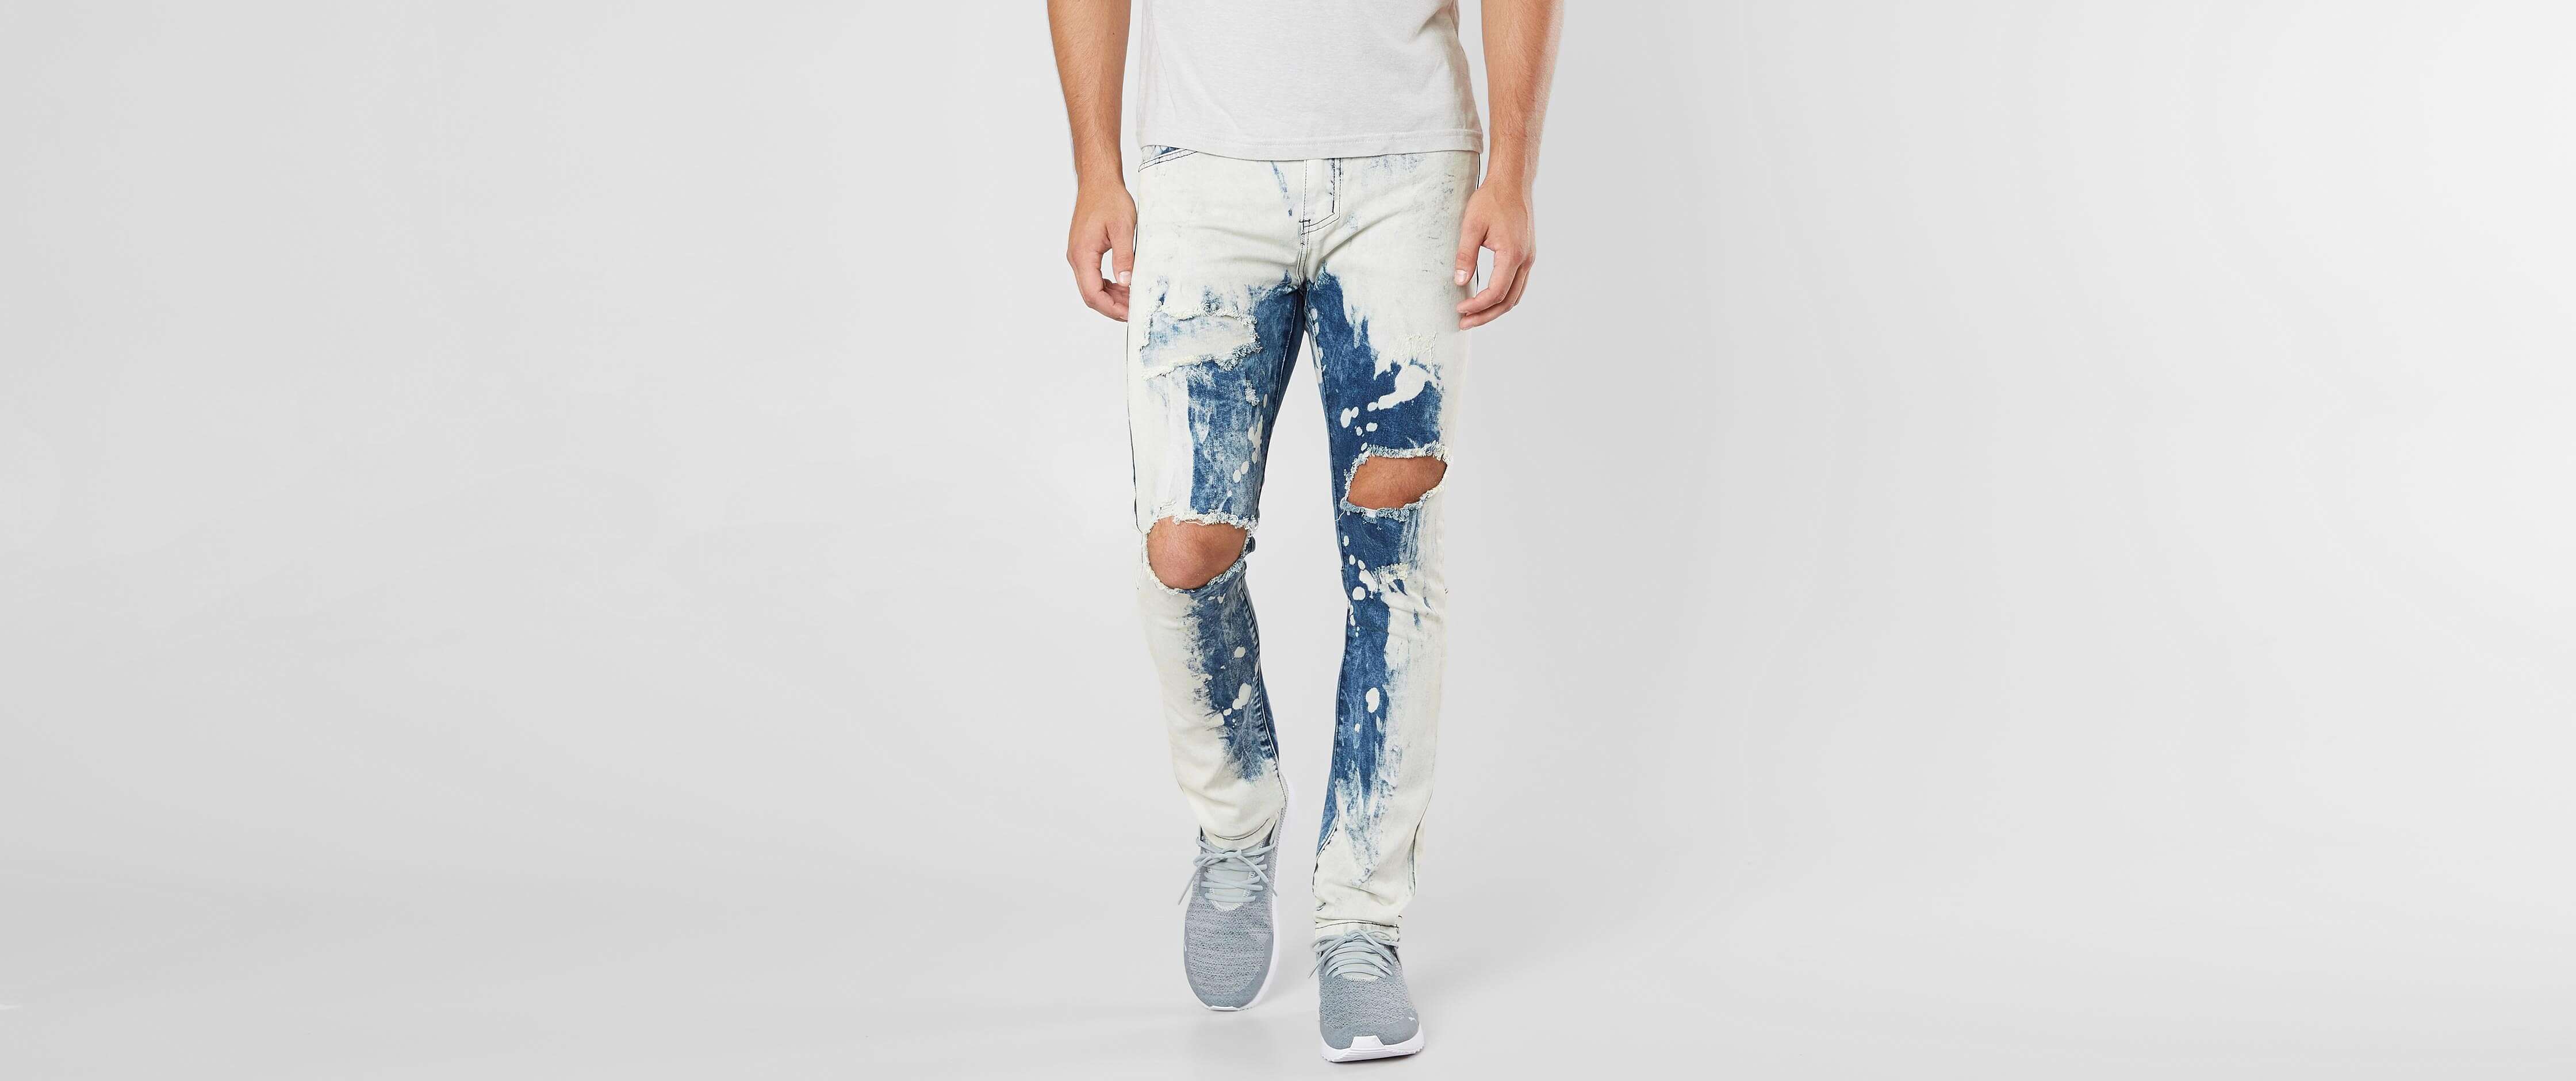 khaki utility skinny jeans